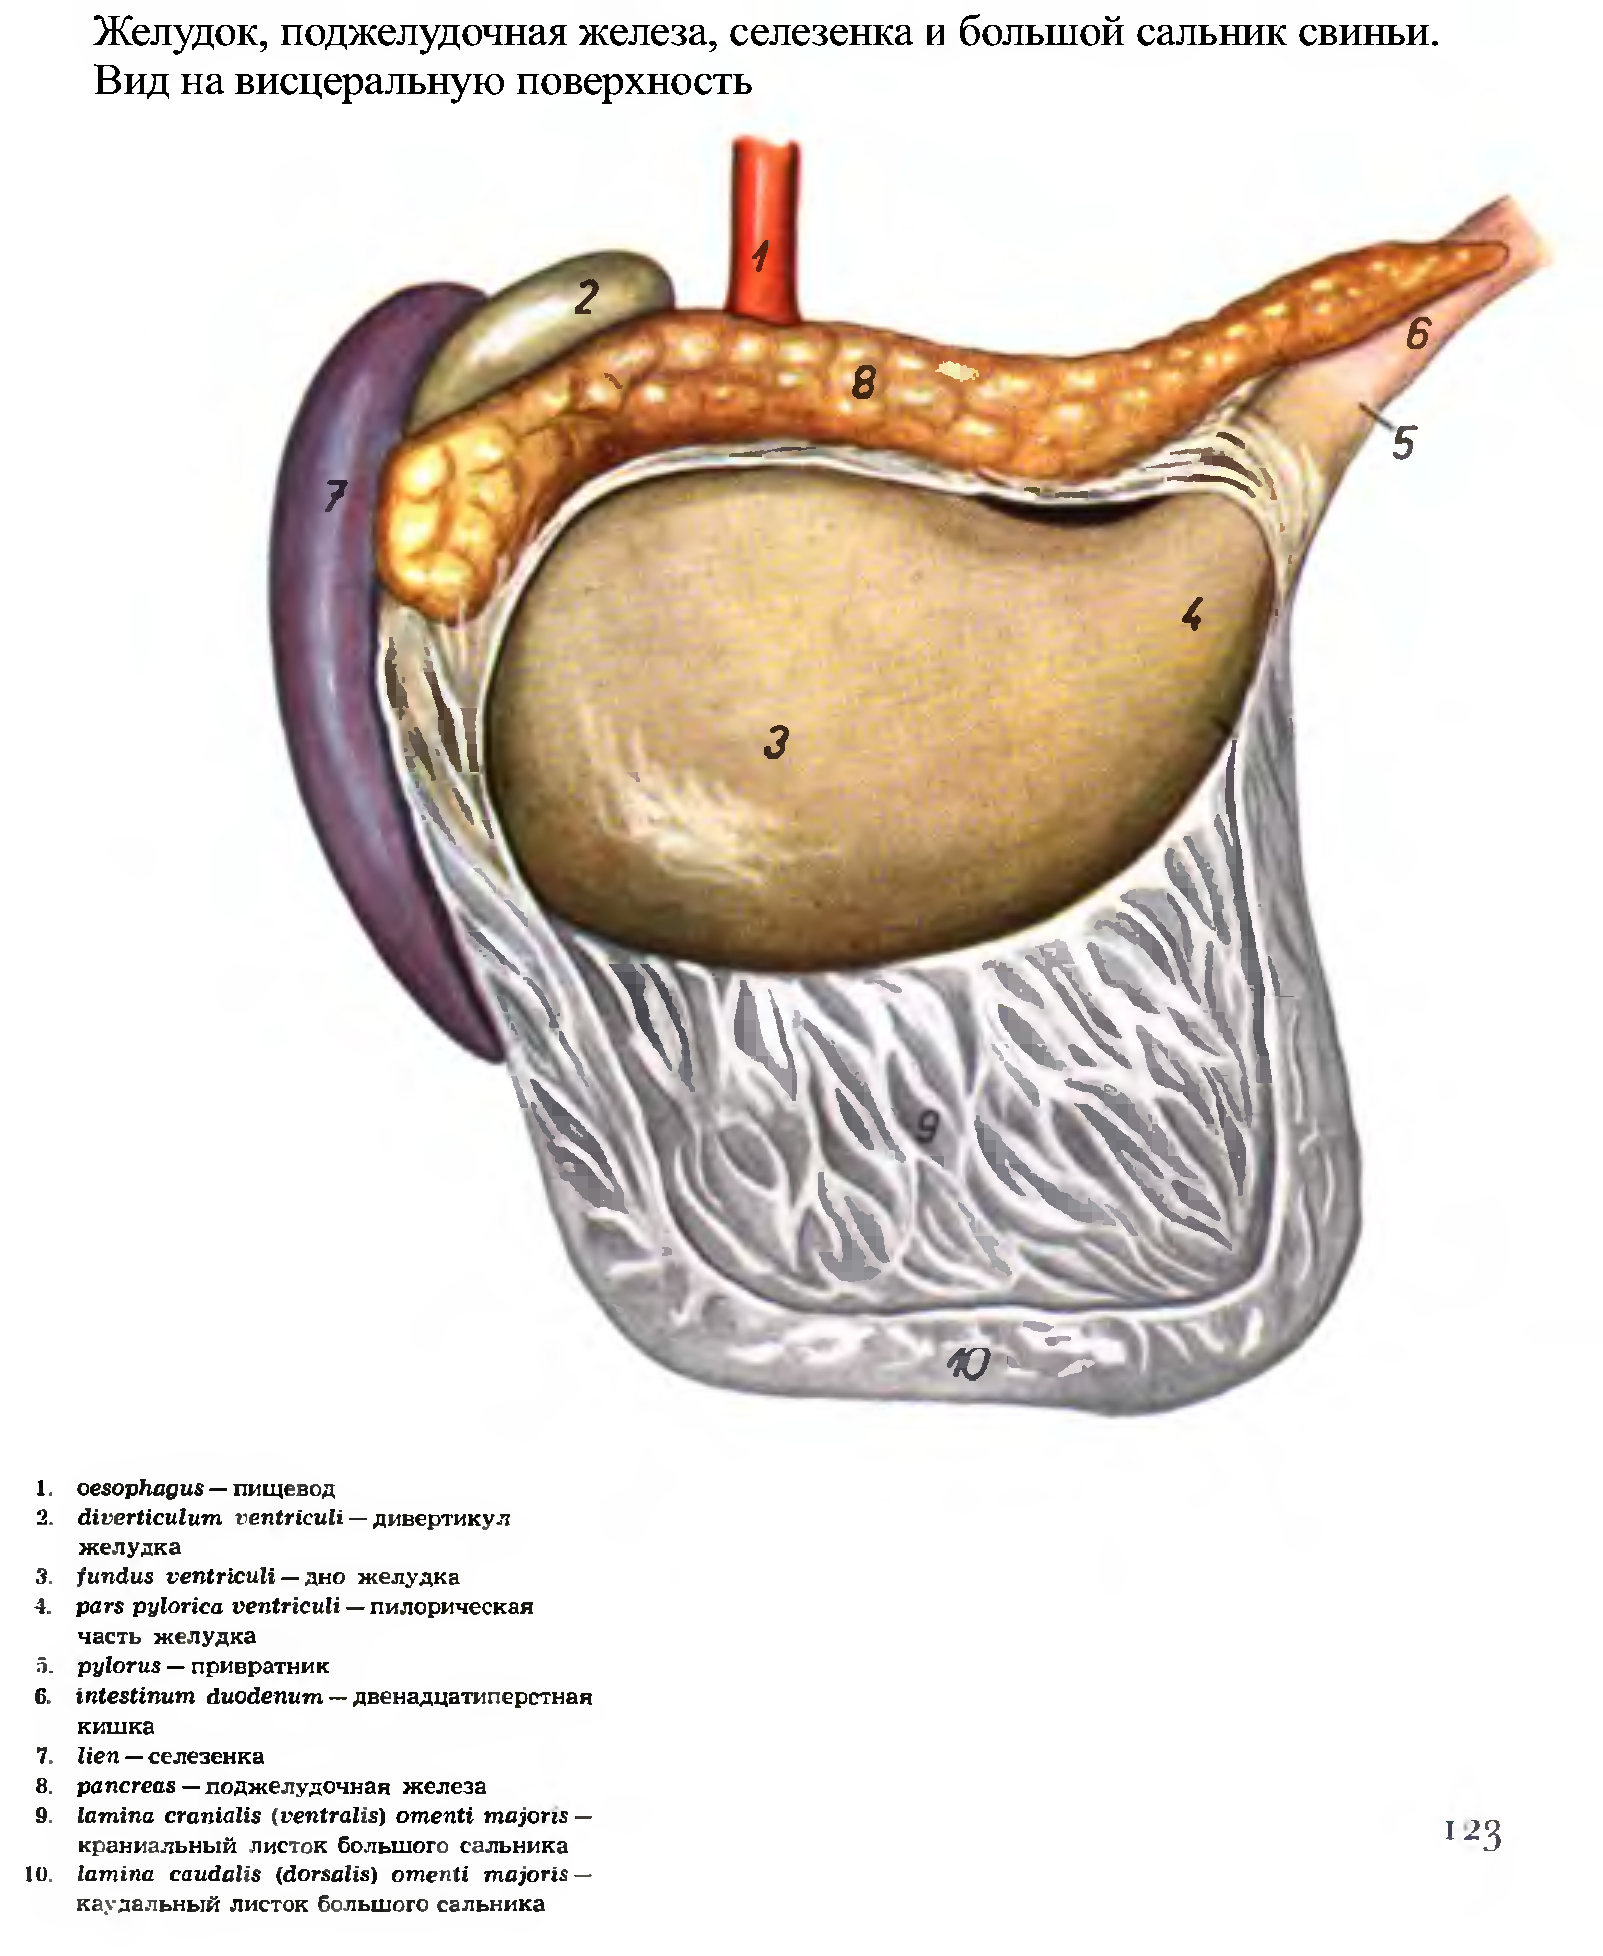 Поджелудочной железы свиньи. Анатомия желудка и поджелудочной железы. Поджелудочная железа крупного рогатого скота. Анатомия селезенки и поджелудочной железы. Поджелудочная железа свиньи.